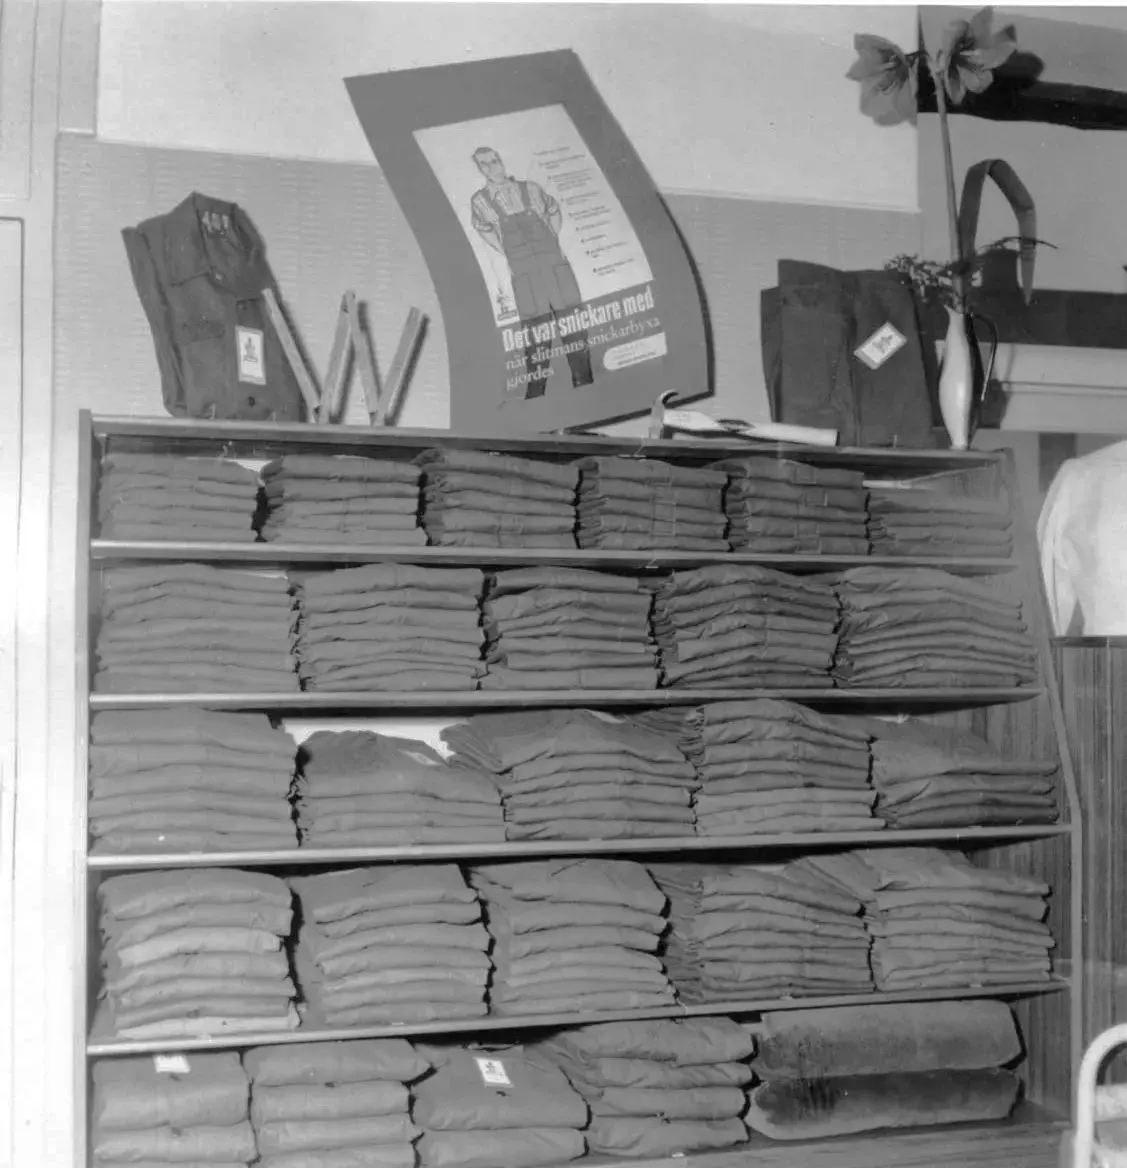 "Vinsy boy - alla grabbars skjorta". Butiken i fastigheten Nyboda erbjöd manufakturvaror och under 1960-talet även byggnadsvaror. 

Konsum övergav Nyboda under mitten av 1960-talet och den privata ICA-handlaren Göran Särnsjö öppnade där en byggvarubutik.